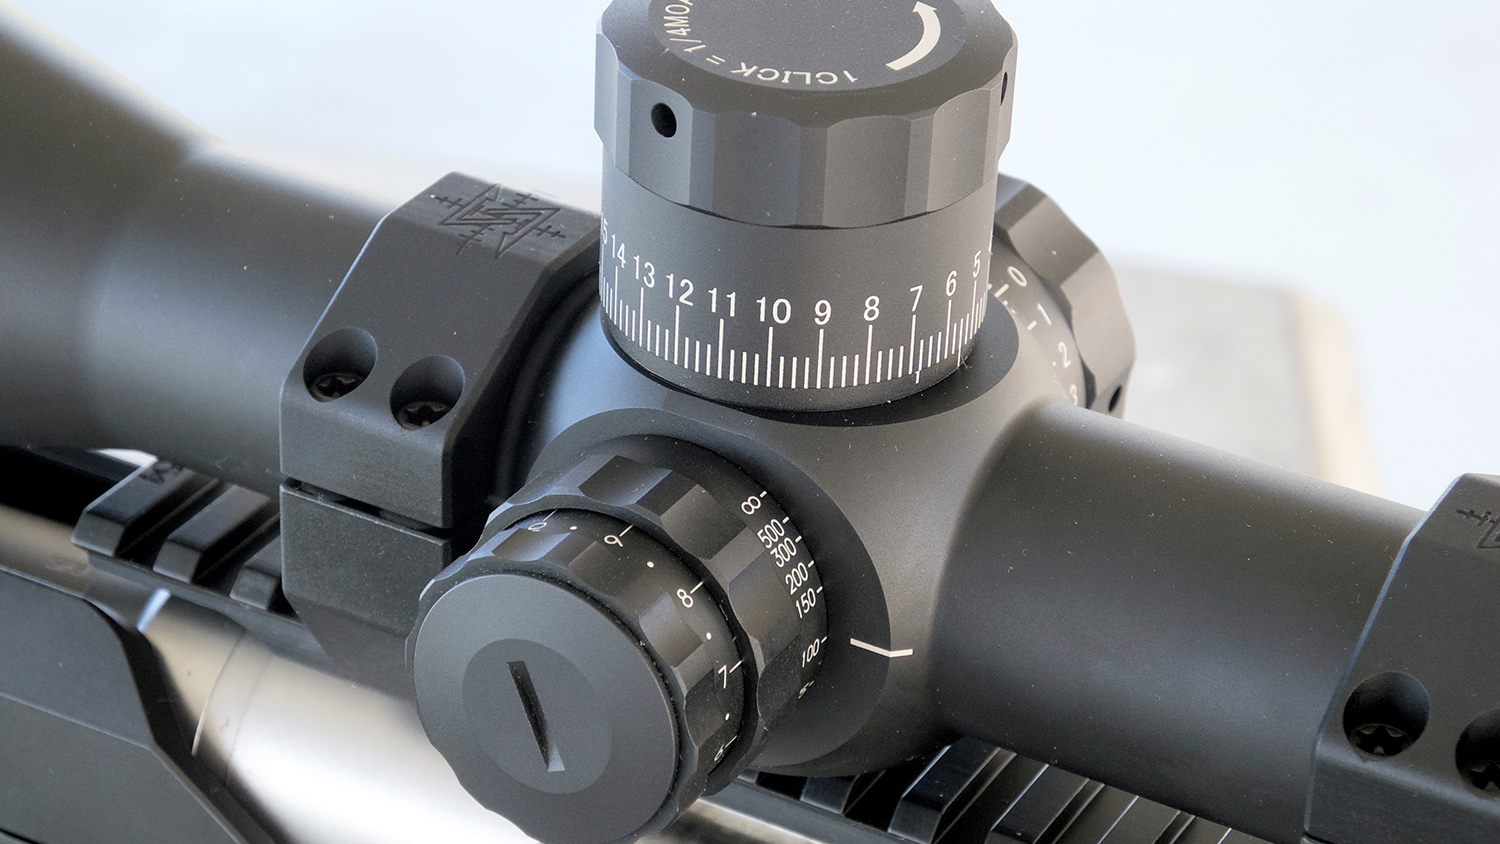 Primary Arms 6-30x55 mm Platinum Series scope